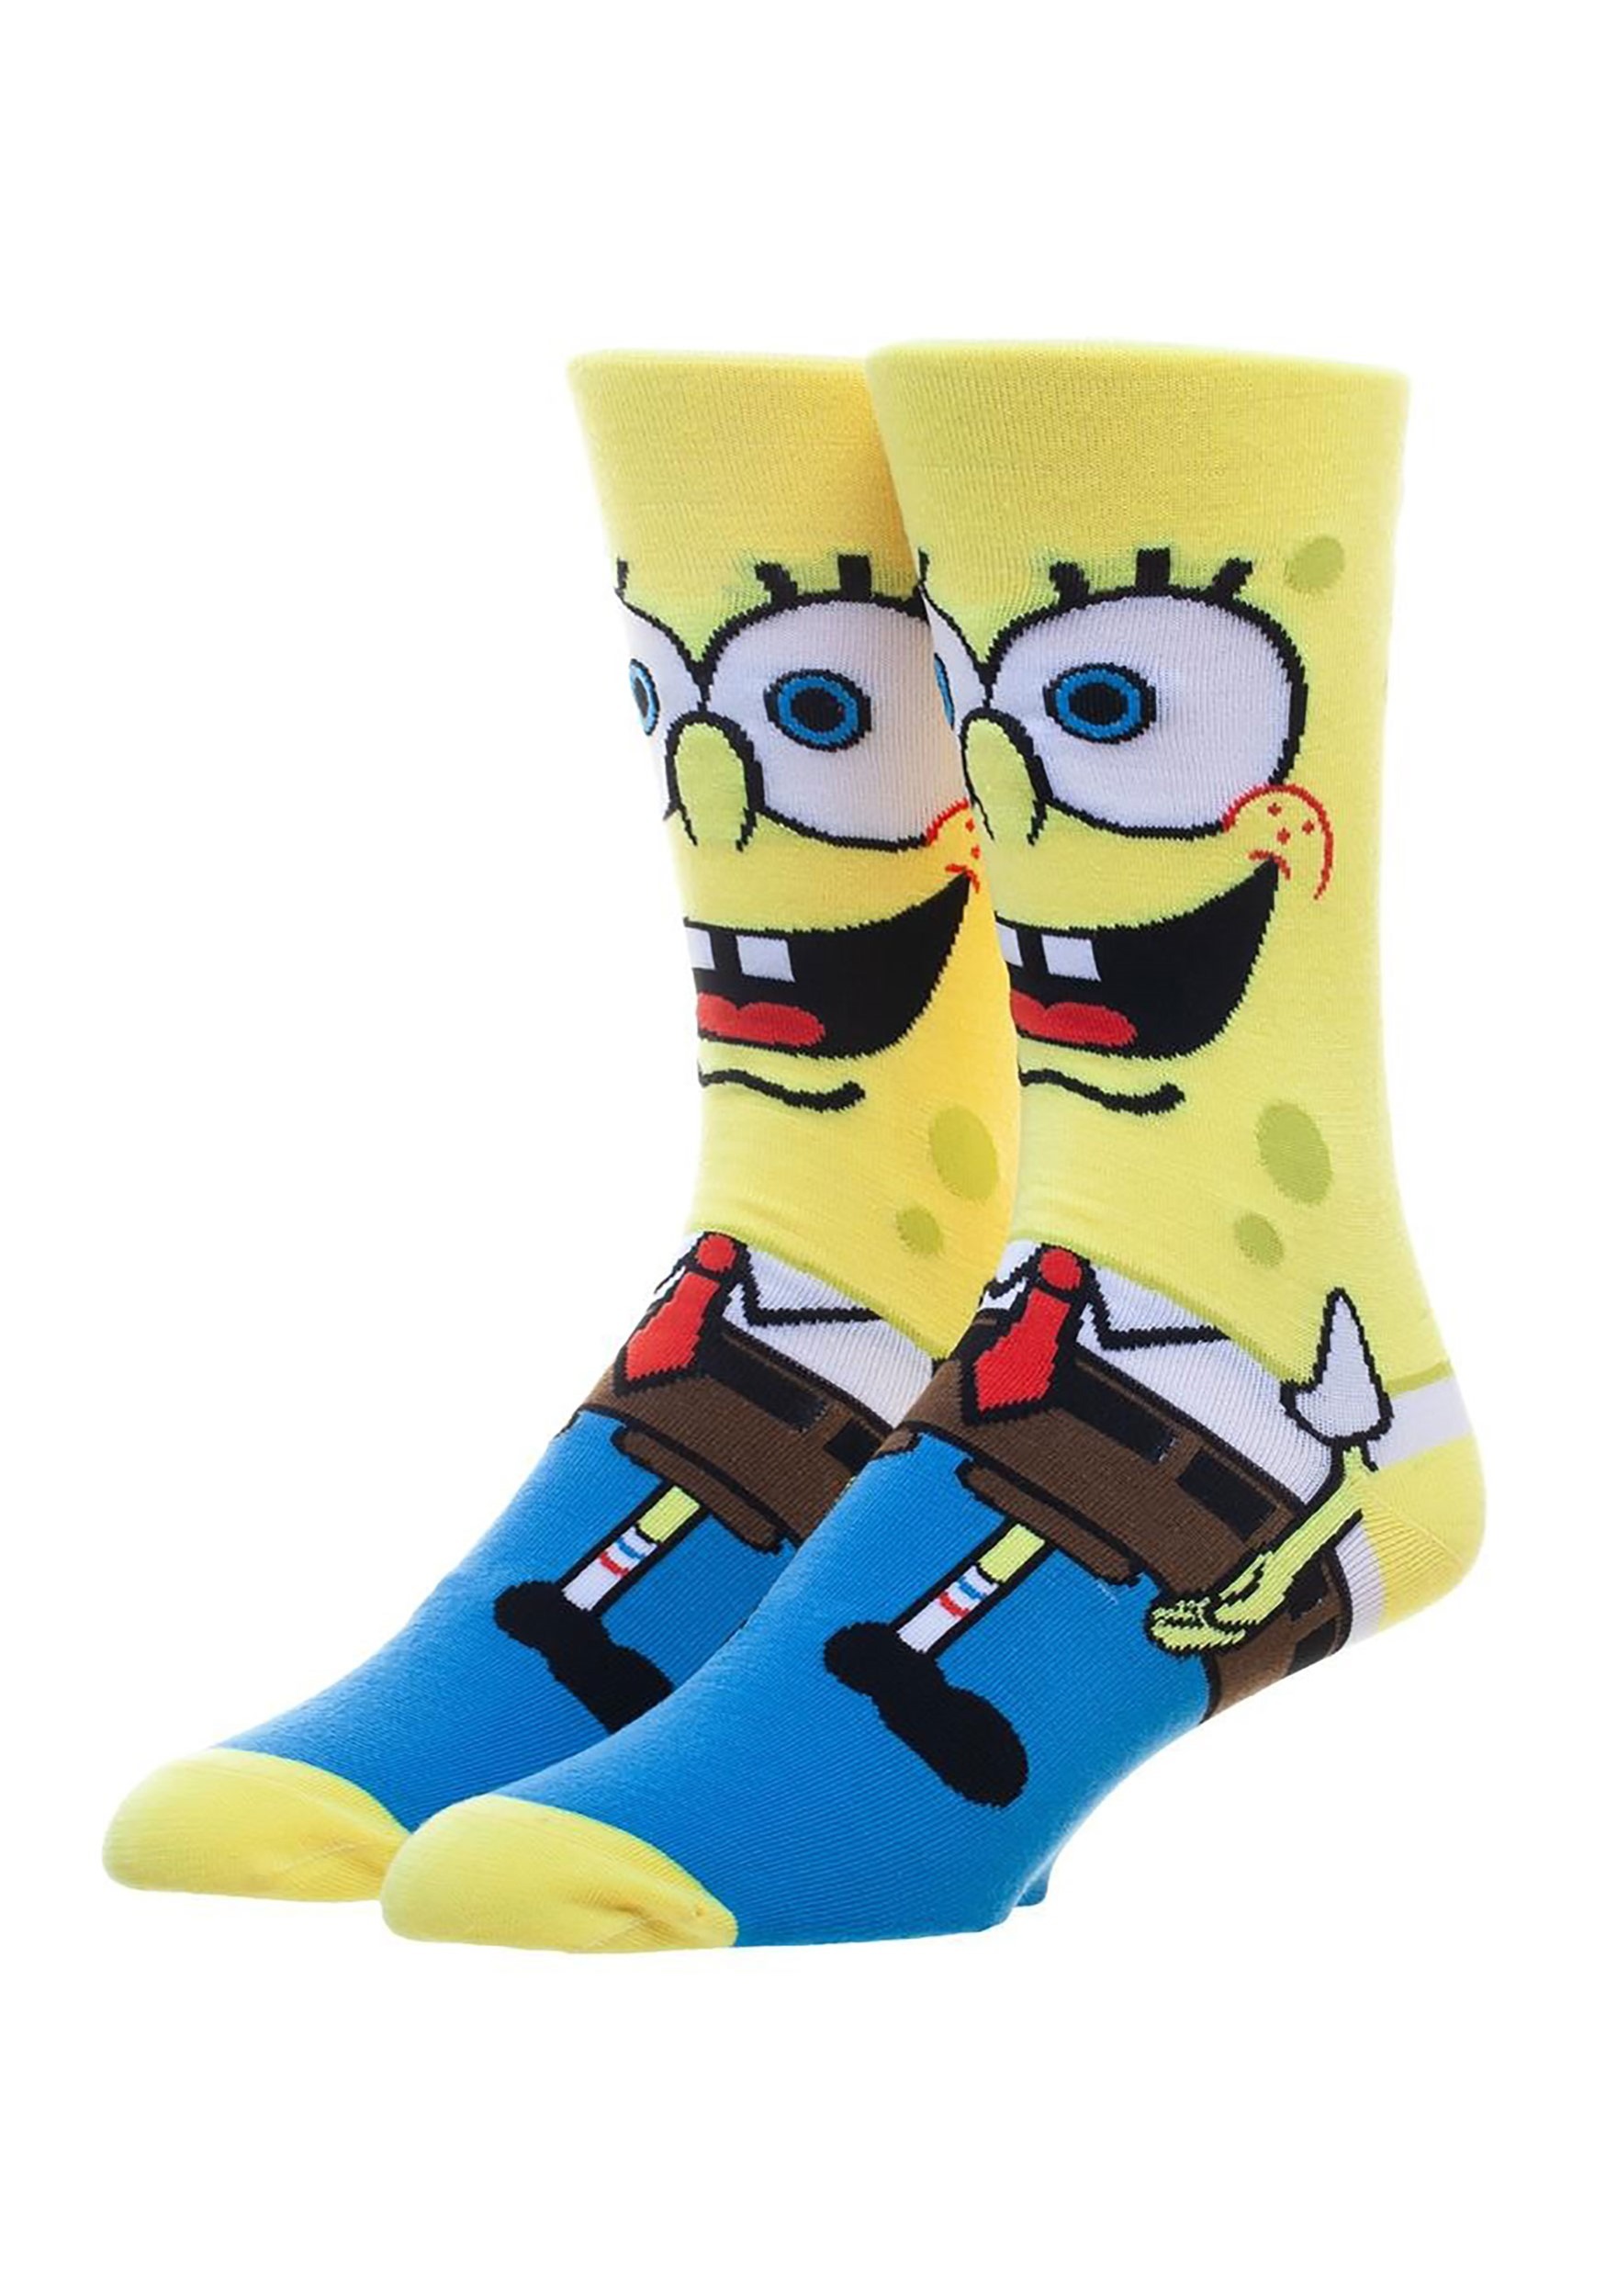 Nickelodeon Spongebob Squarepants 360 Character Crew Socks